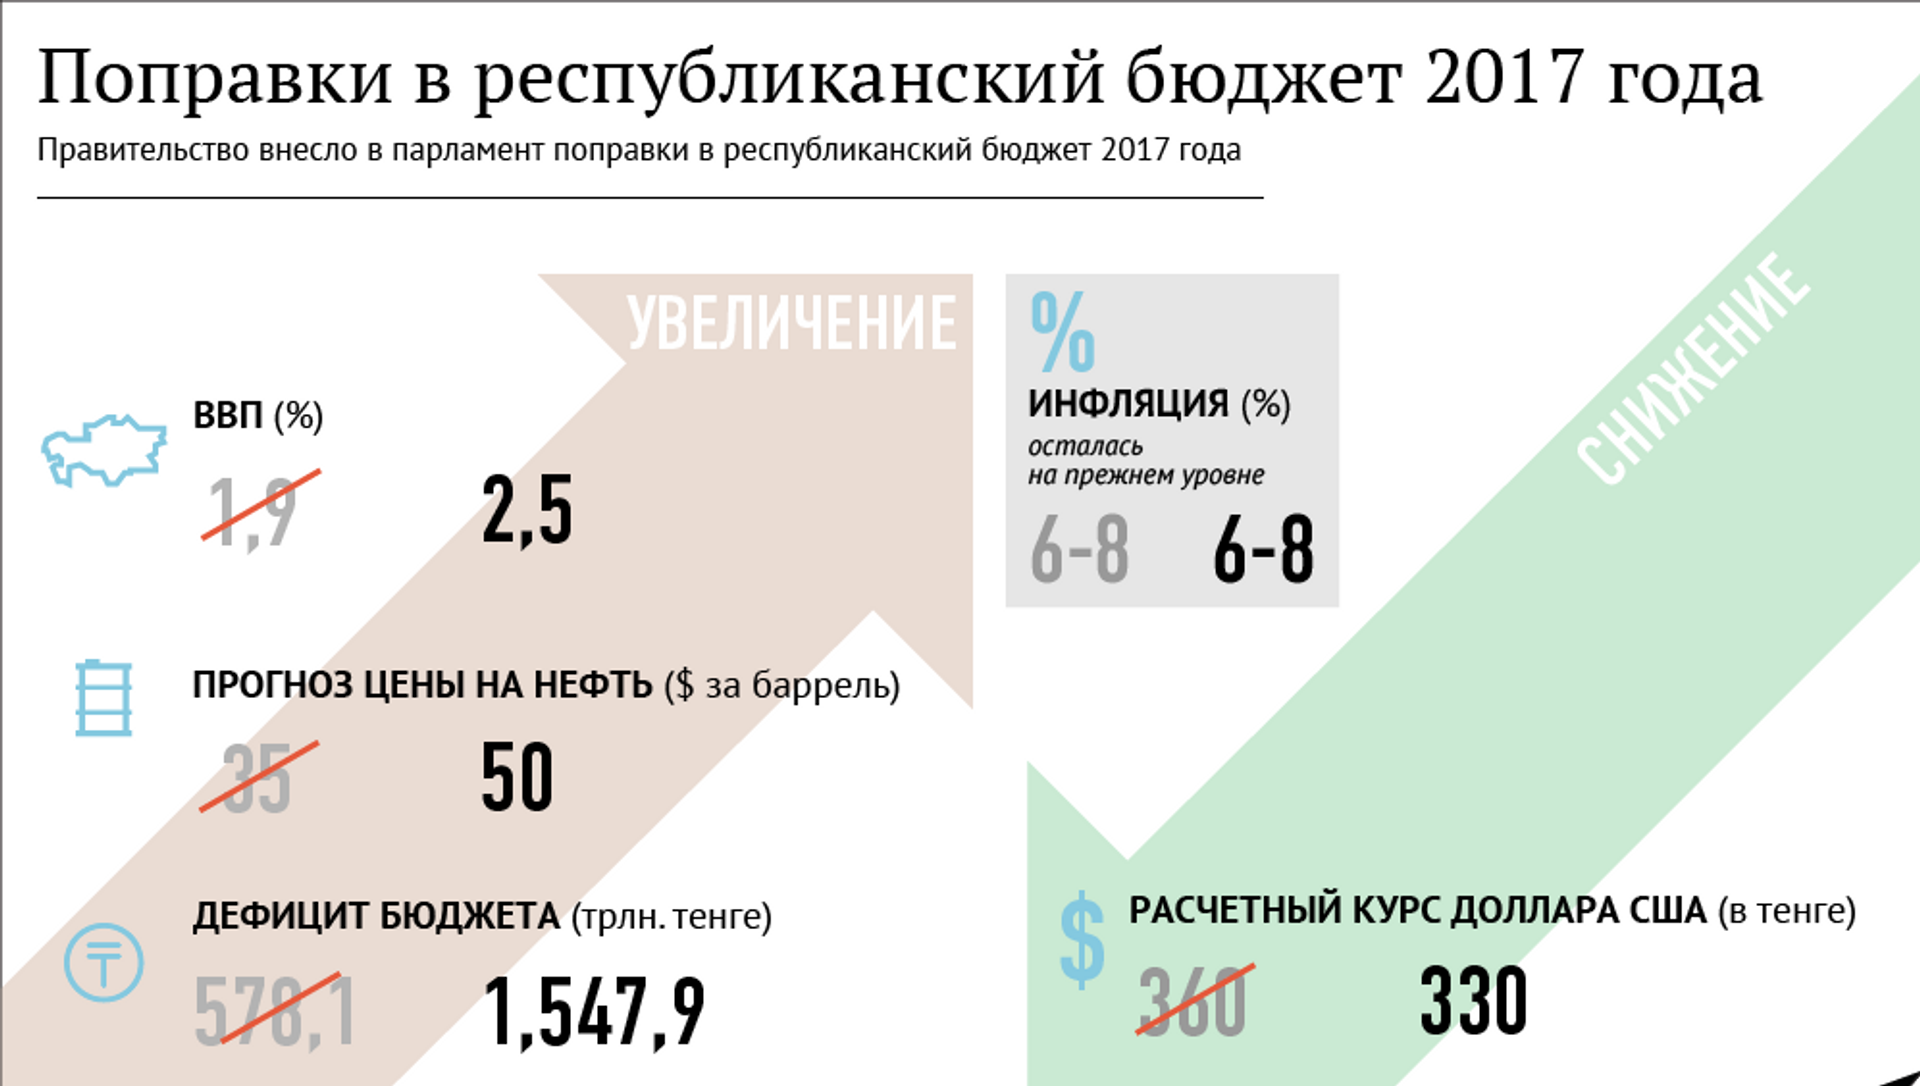 Изменения в 2017 году в россии. Республиканский бюджет. Изменения в 2017 году. Дефицит бюджета в Казахстане.